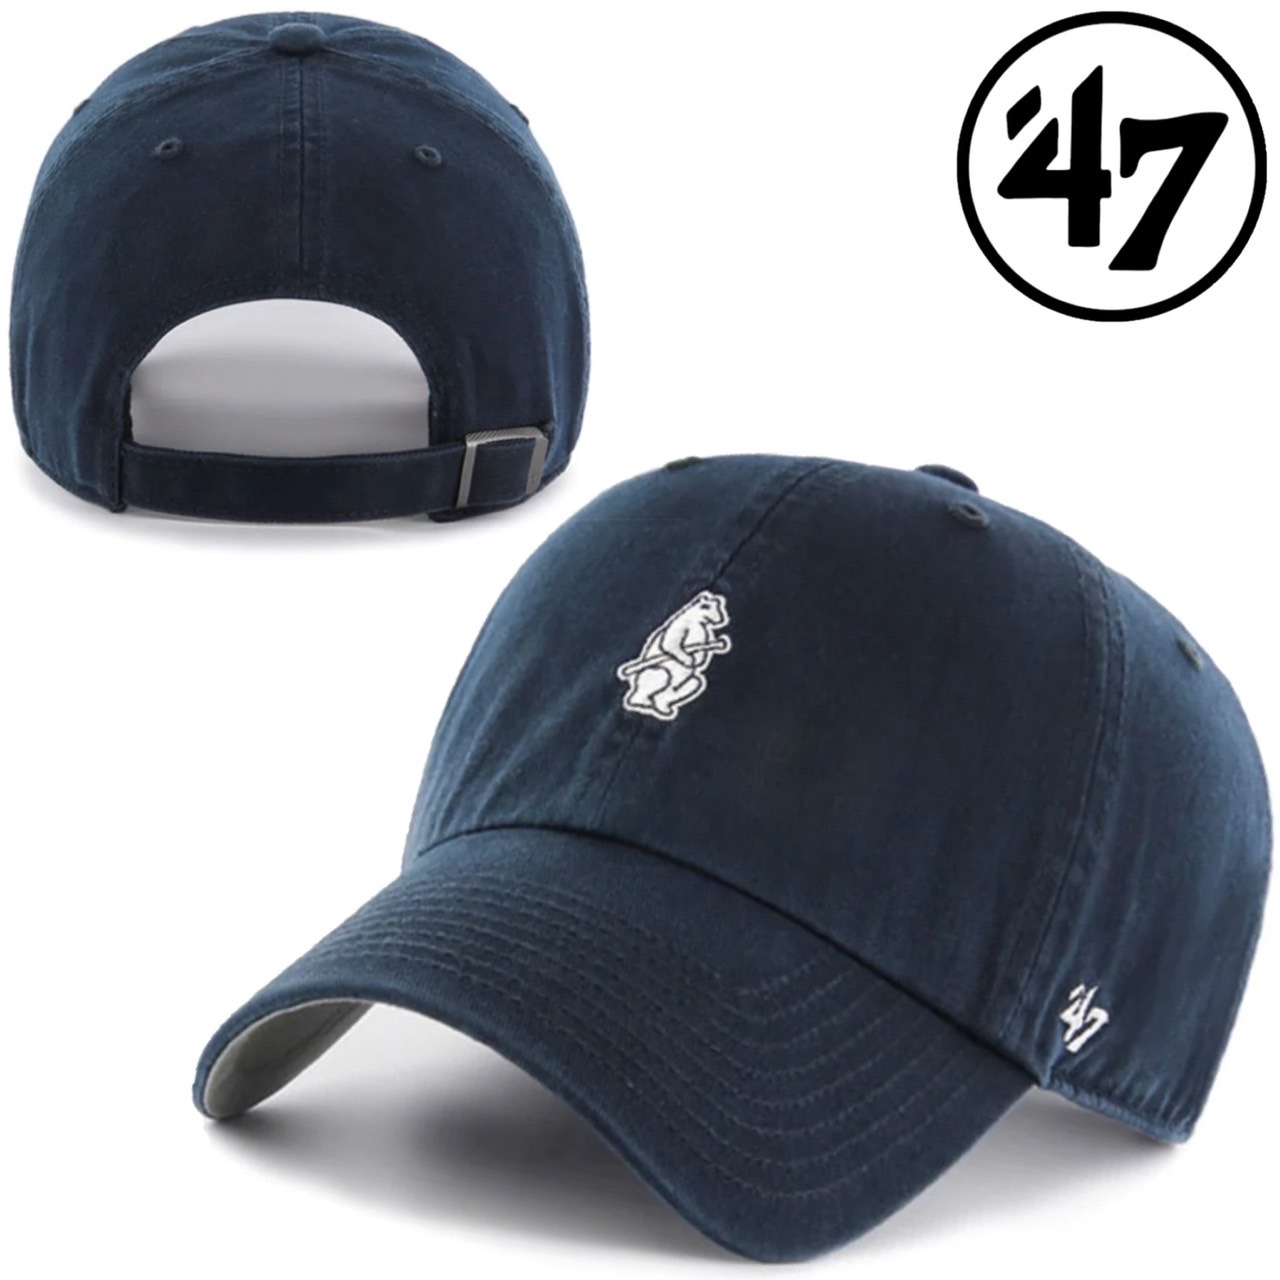 47 フォーティーセブン ブランド キャップ 帽子ミニロゴ LA ベース 